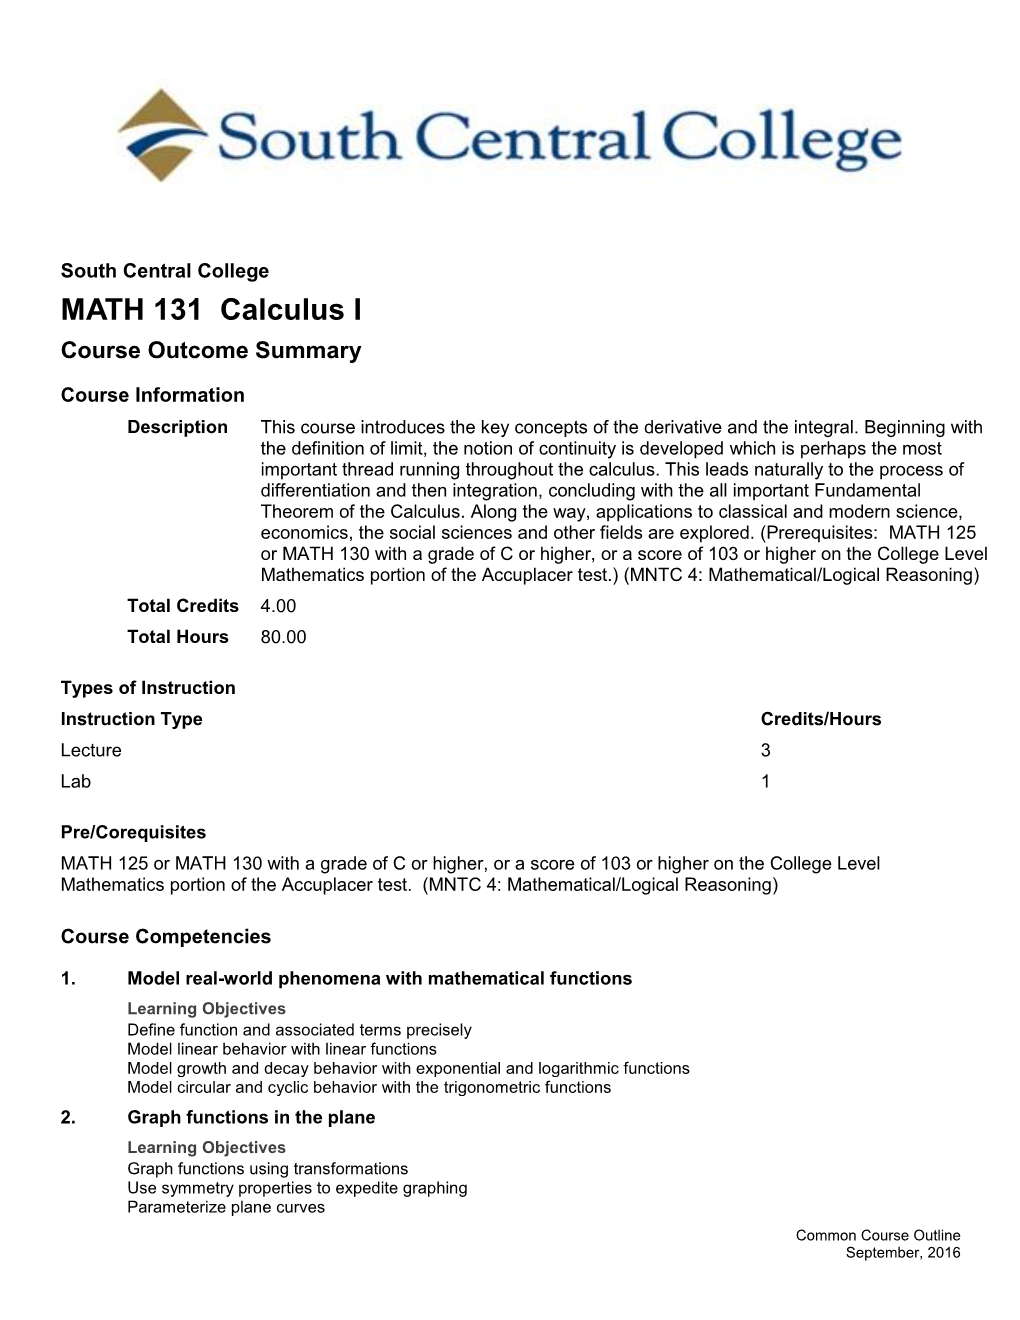 MATH 131 Calculus I Course Outcome Summary